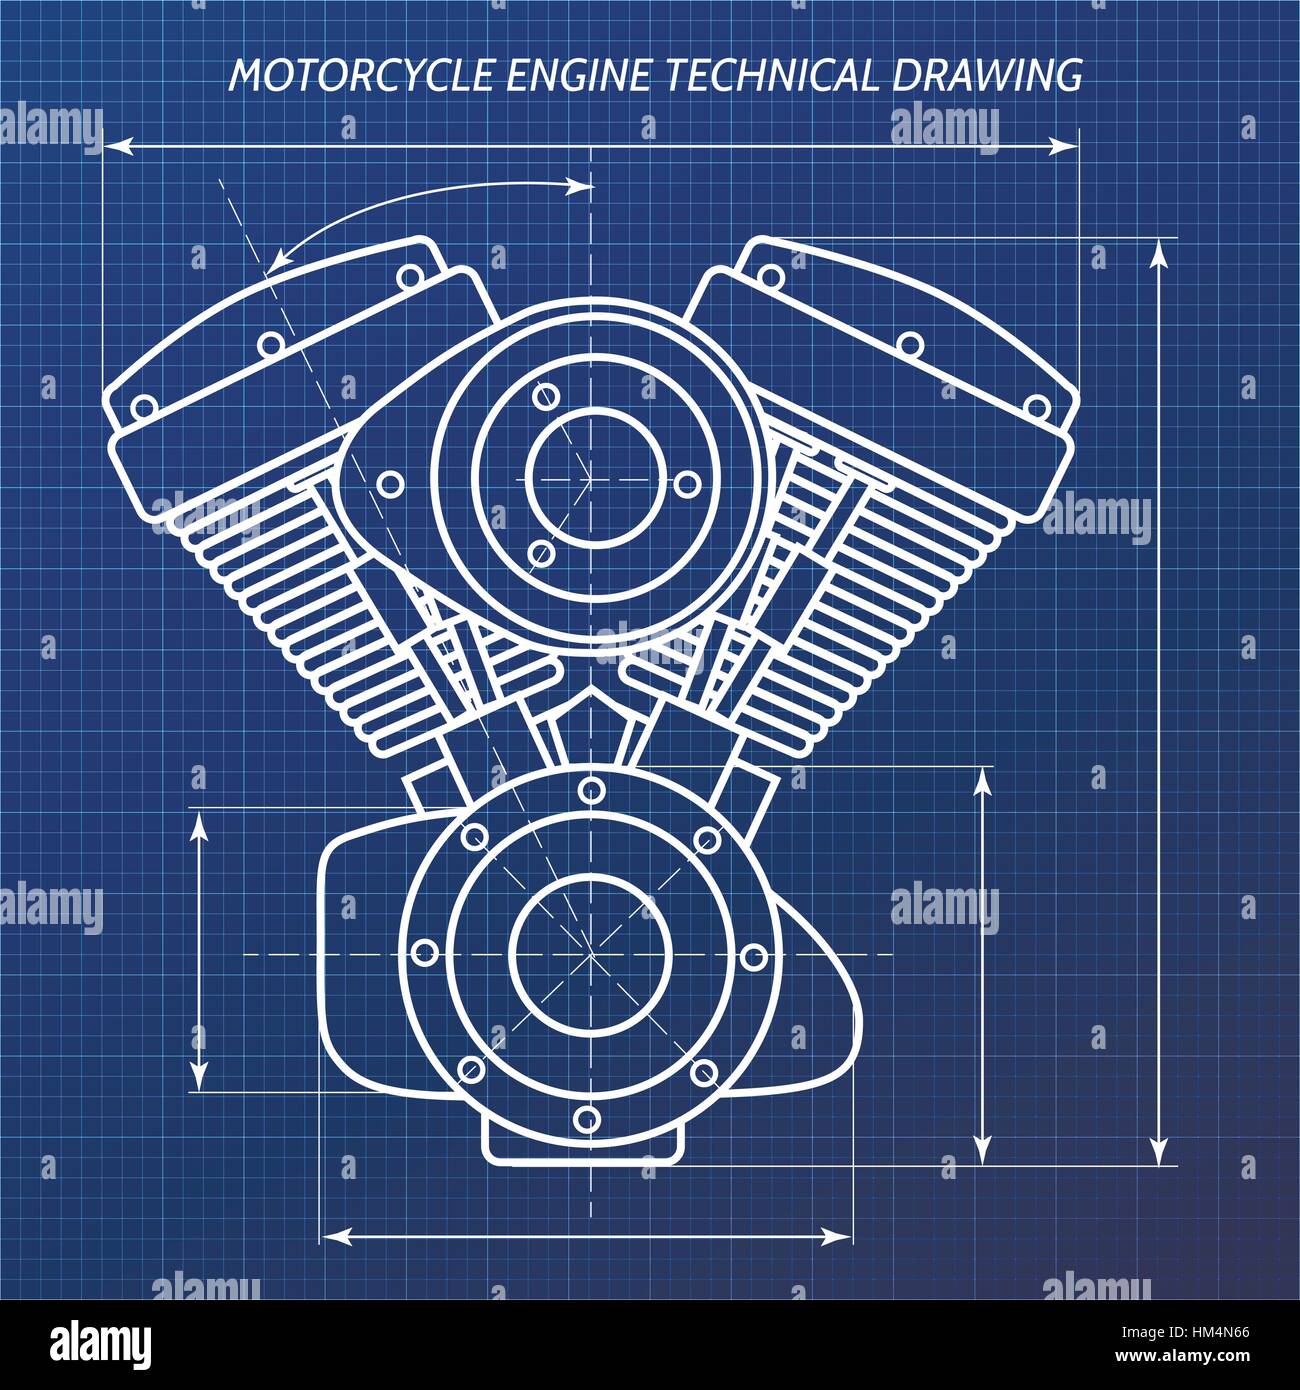 Technische Zeichnungen von Motorrad-Motor. Motor-engineering-Konzept. Vektor-Illustration. Stock Vektor